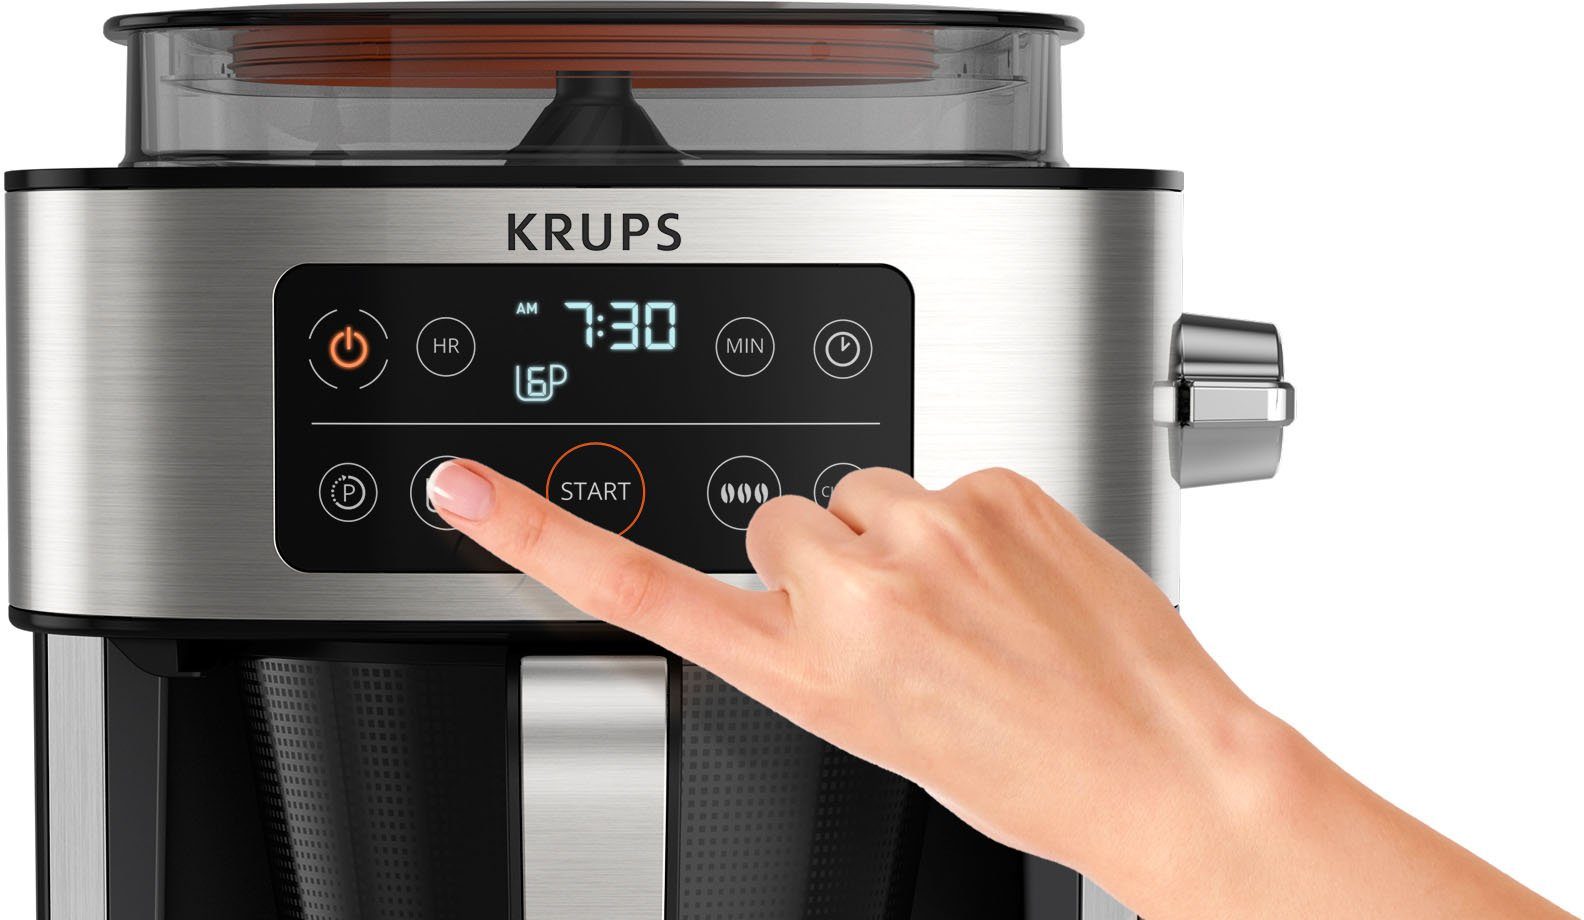 Krups bis integrierte Filterkaffeemaschine Kaffee g Aroma KM760D zu für Partner, Kaffee-Vorratsbox Kaffeekanne, 1,25l 400 frischen